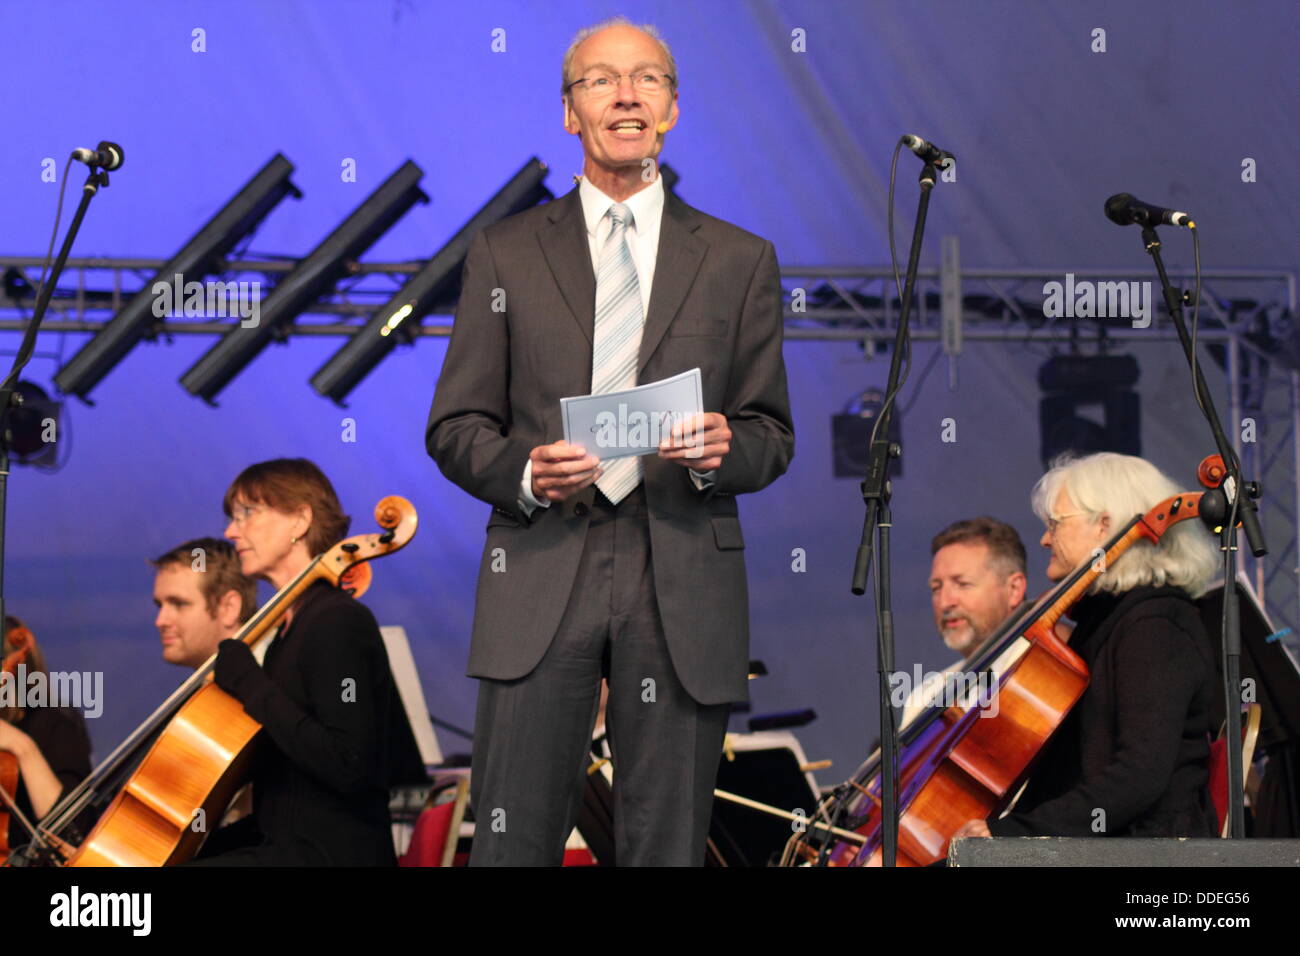 Presentador de radio FM clásica, John Brunning alberga el Parque Darley conciertos; un concierto de música clásica al aire libre, Derby, Reino Unido, 26 de Sept. Foto de stock